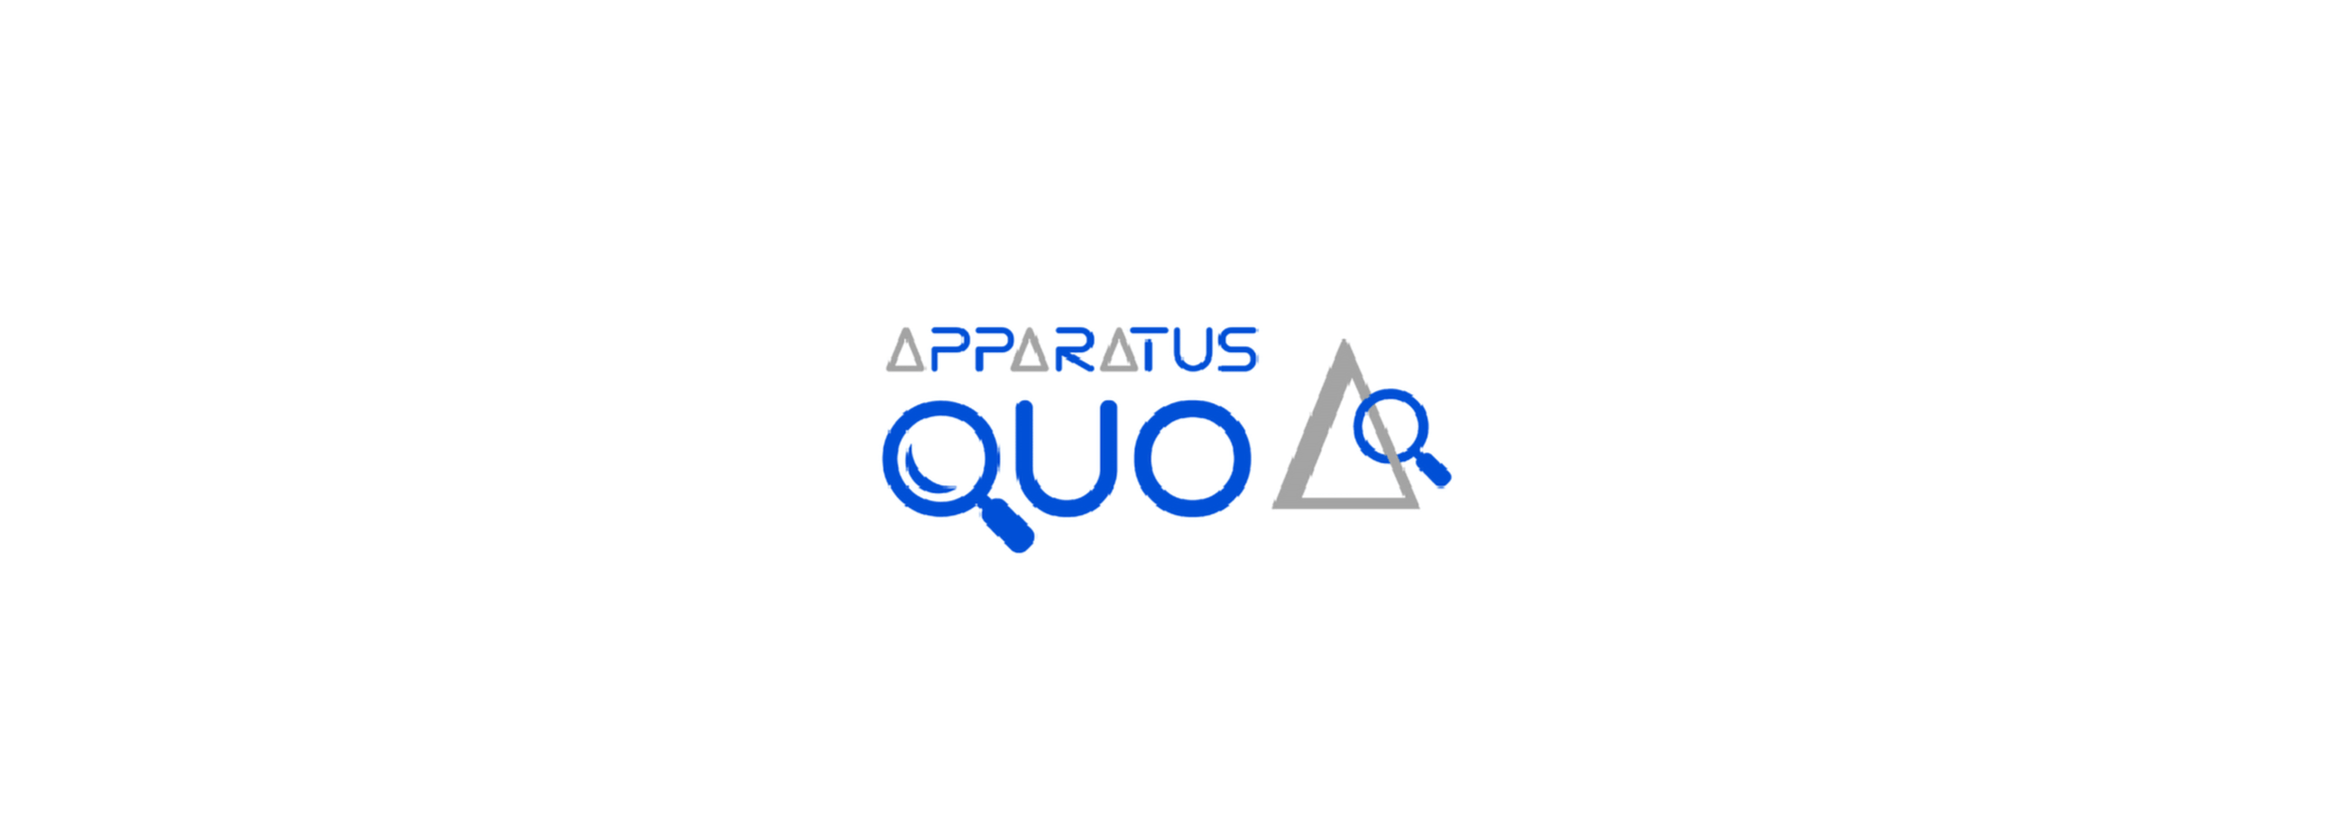 The Apparatus Quo logo